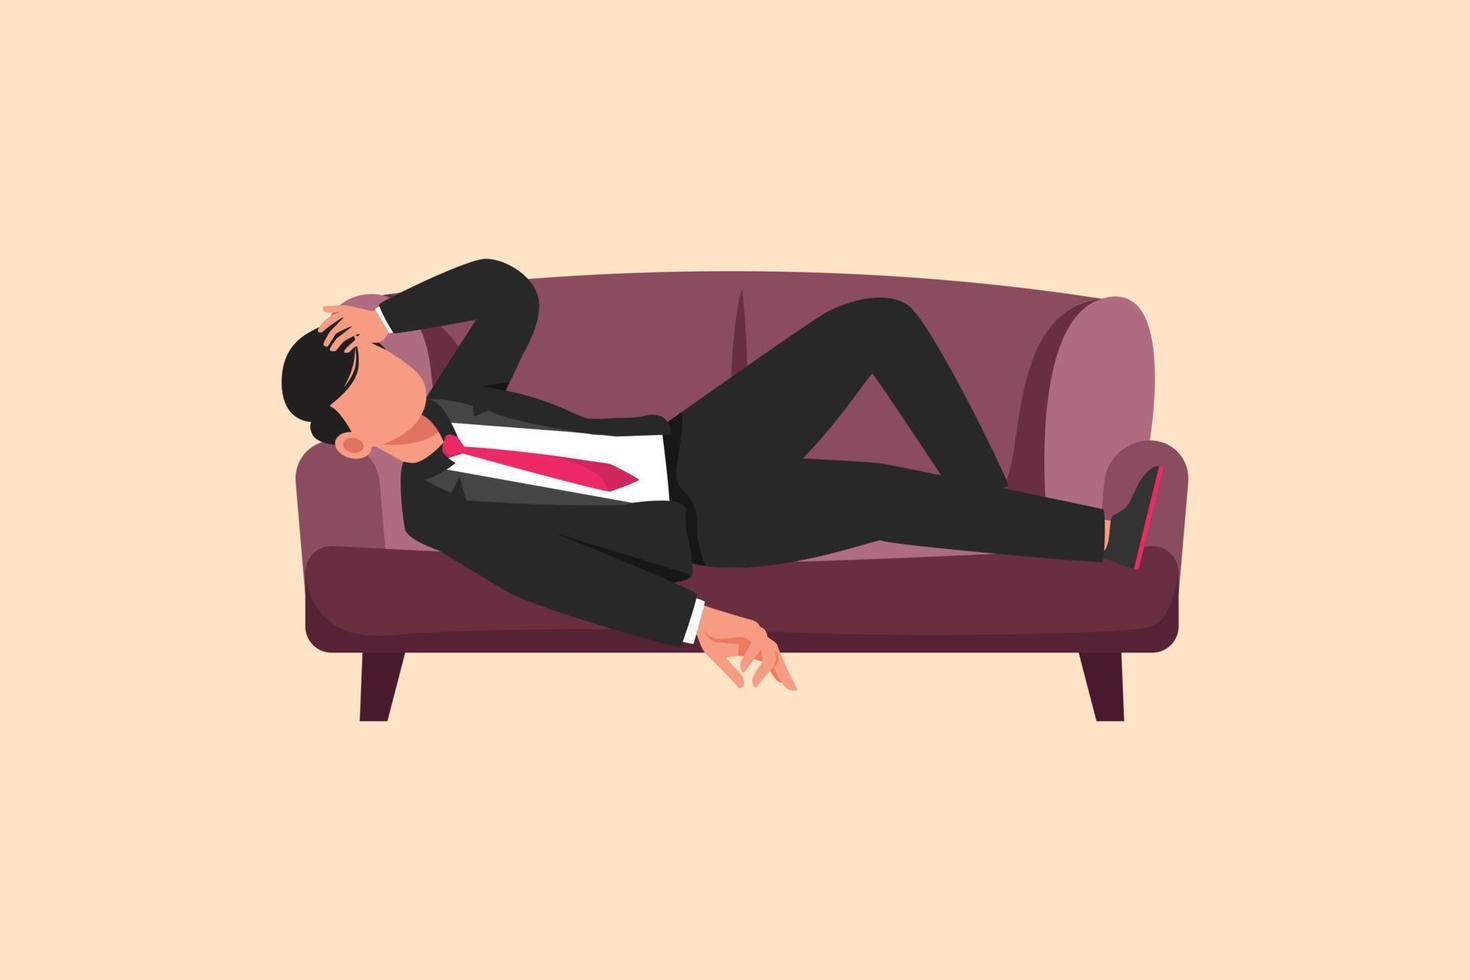 business design tekening depressief zakenman verdrietig moe slaperig rusten op de bank. gefrustreerde werknemer met hoofd liggend op de bank. stress en angst om te falen. platte cartoon stijl vectorillustratie vector